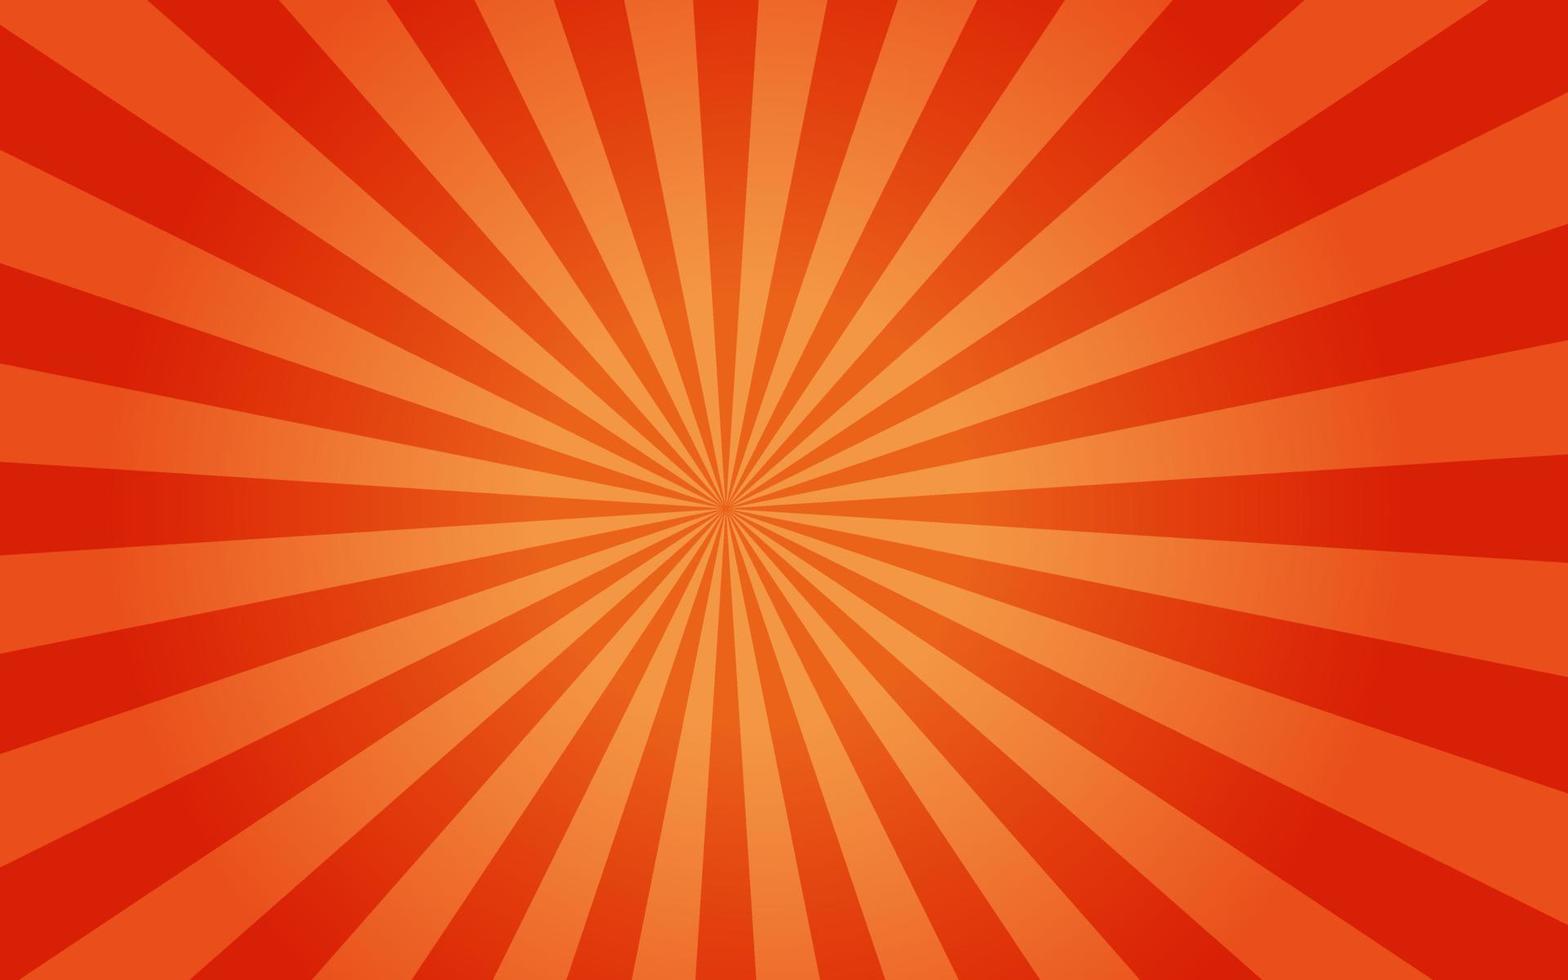 raggi di sole in stile vintage retrò su sfondo arancione, motivo a raggiera di fondo. raggi. illustrazione vettoriale banner estivo. carta da parati astratta sunburst per la pubblicità sui social media aziendali modello.